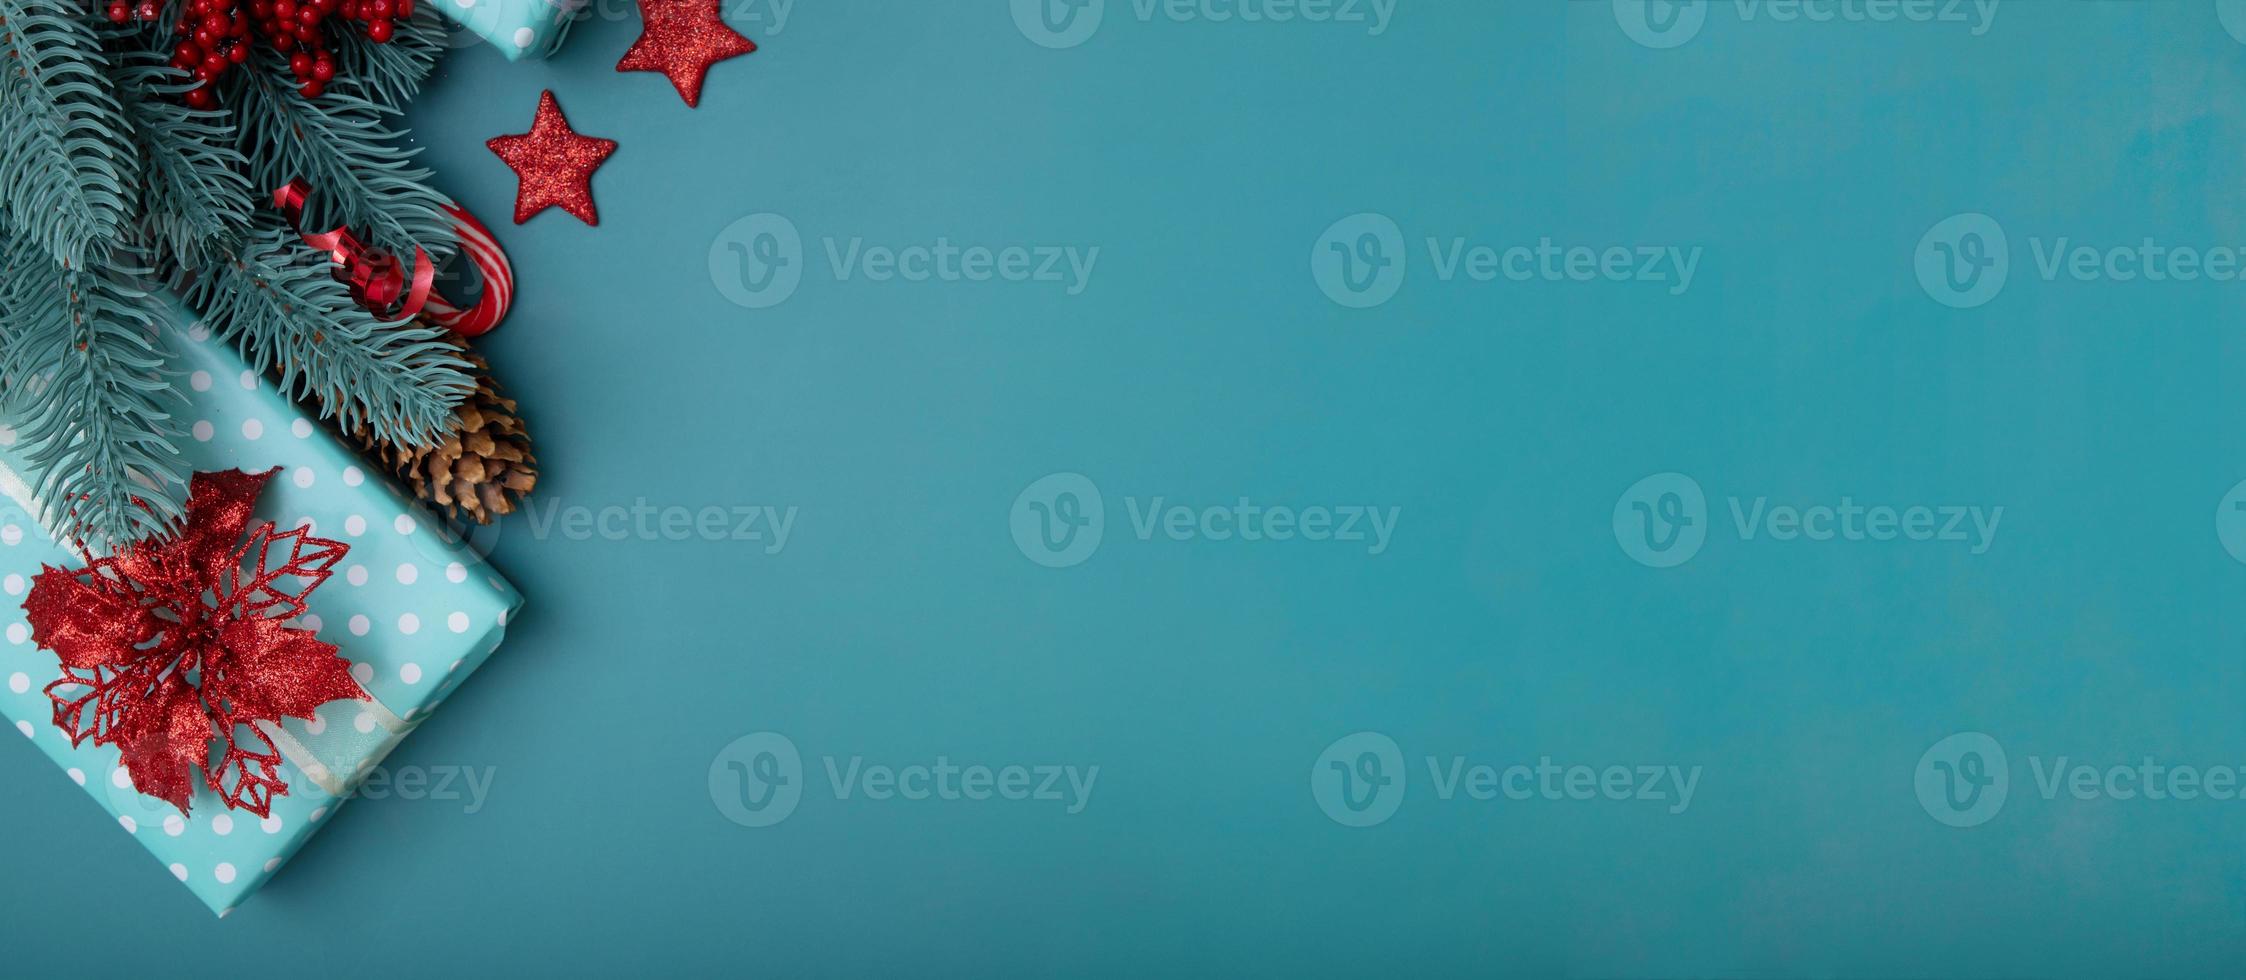 Weihnachten flach Hintergrund mit Geschenken, Weihnachtsstern und Kiefer auf türkisfarbenem Hintergrund foto